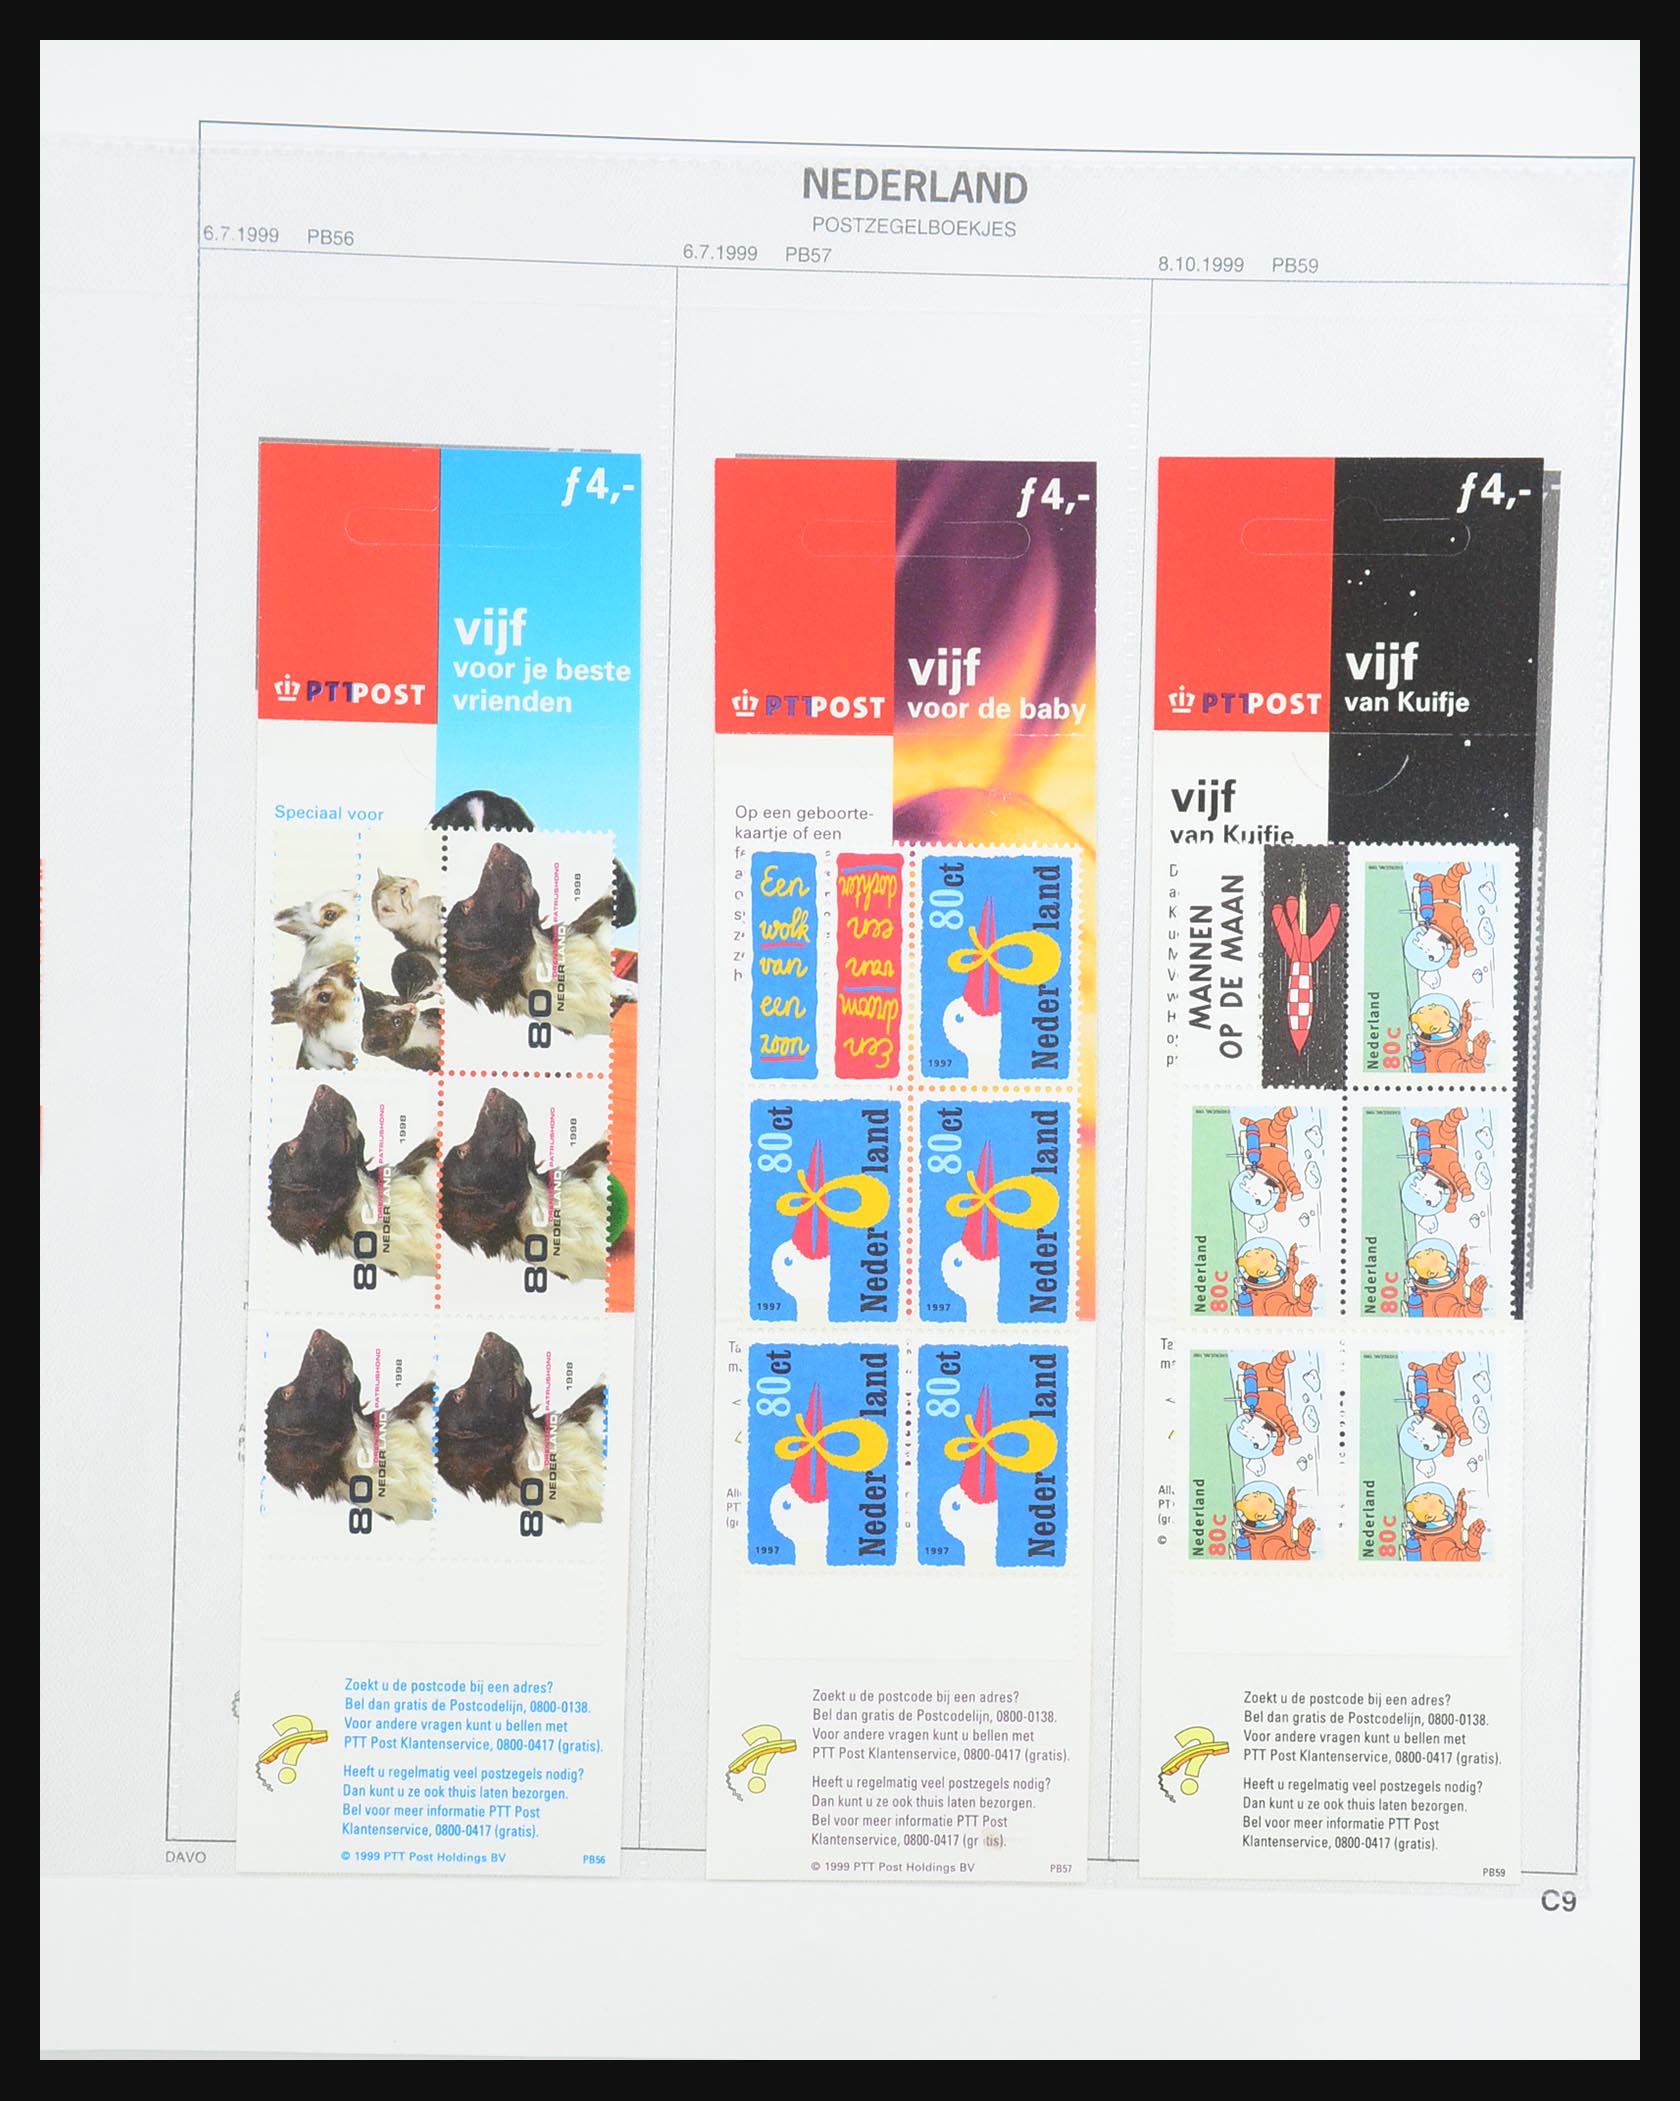 31317 034 - 31317 Netherlands stamp booklets 1964-2000.